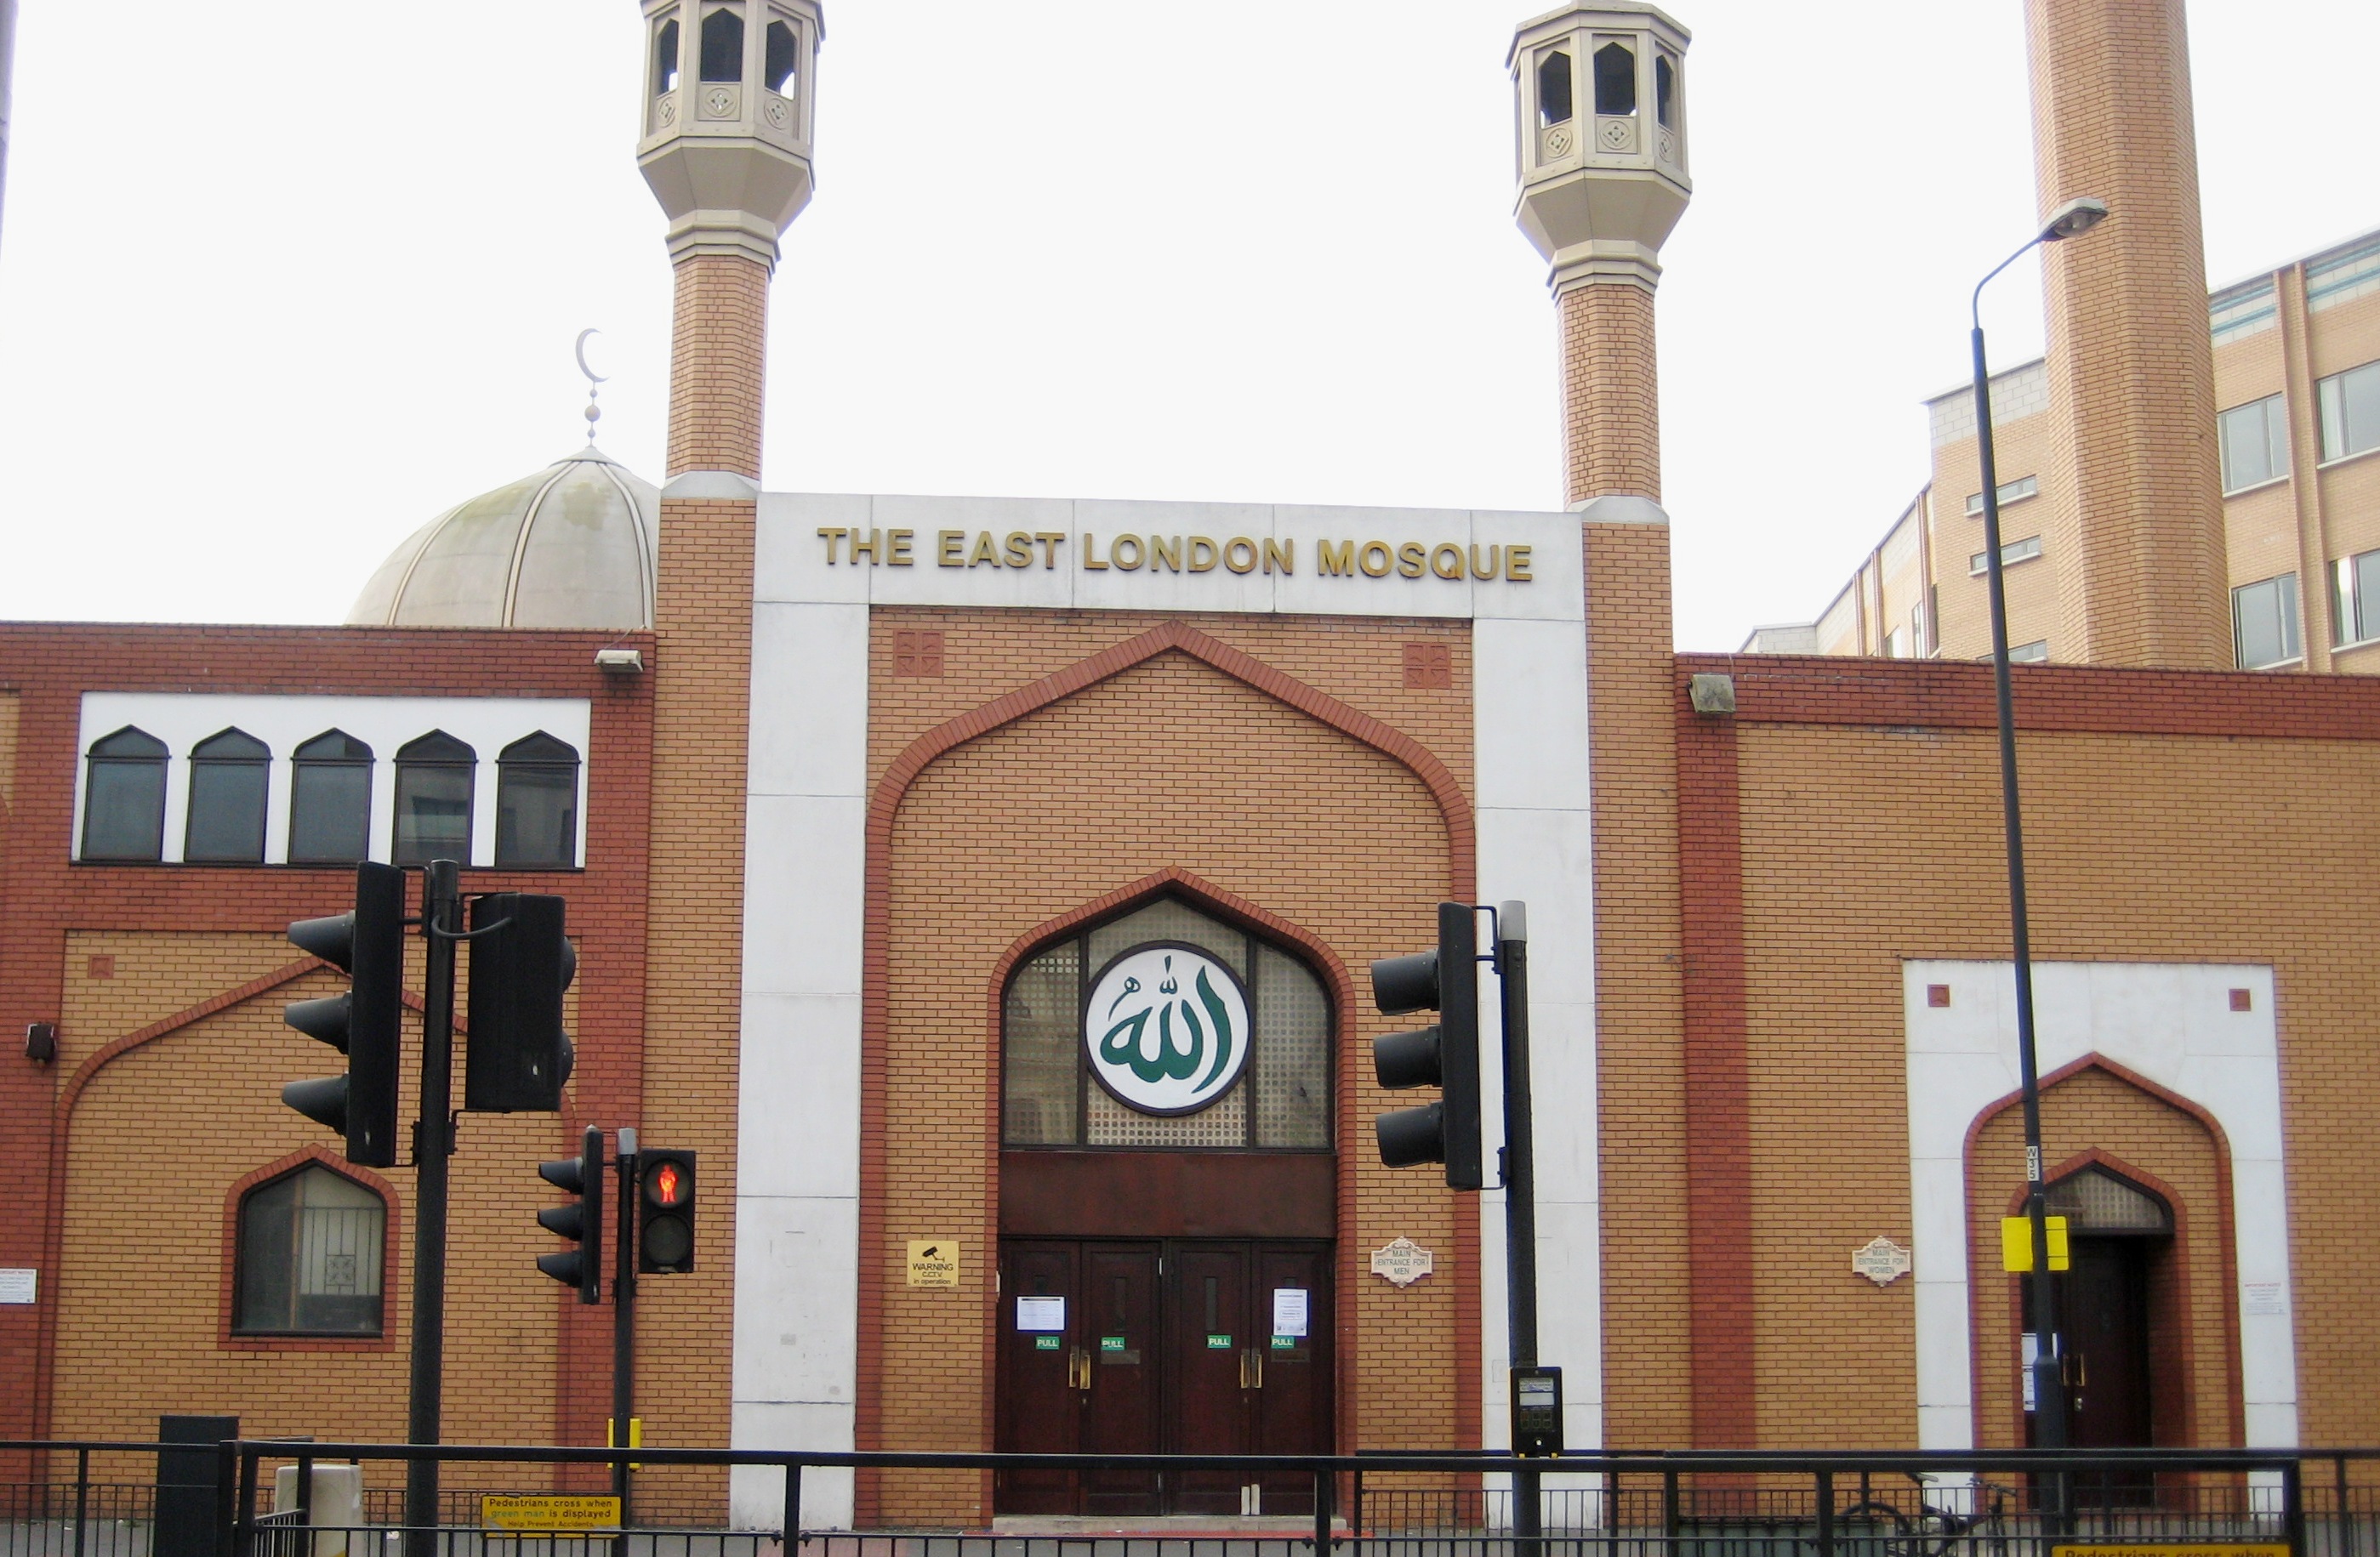 East London Mosque entrance